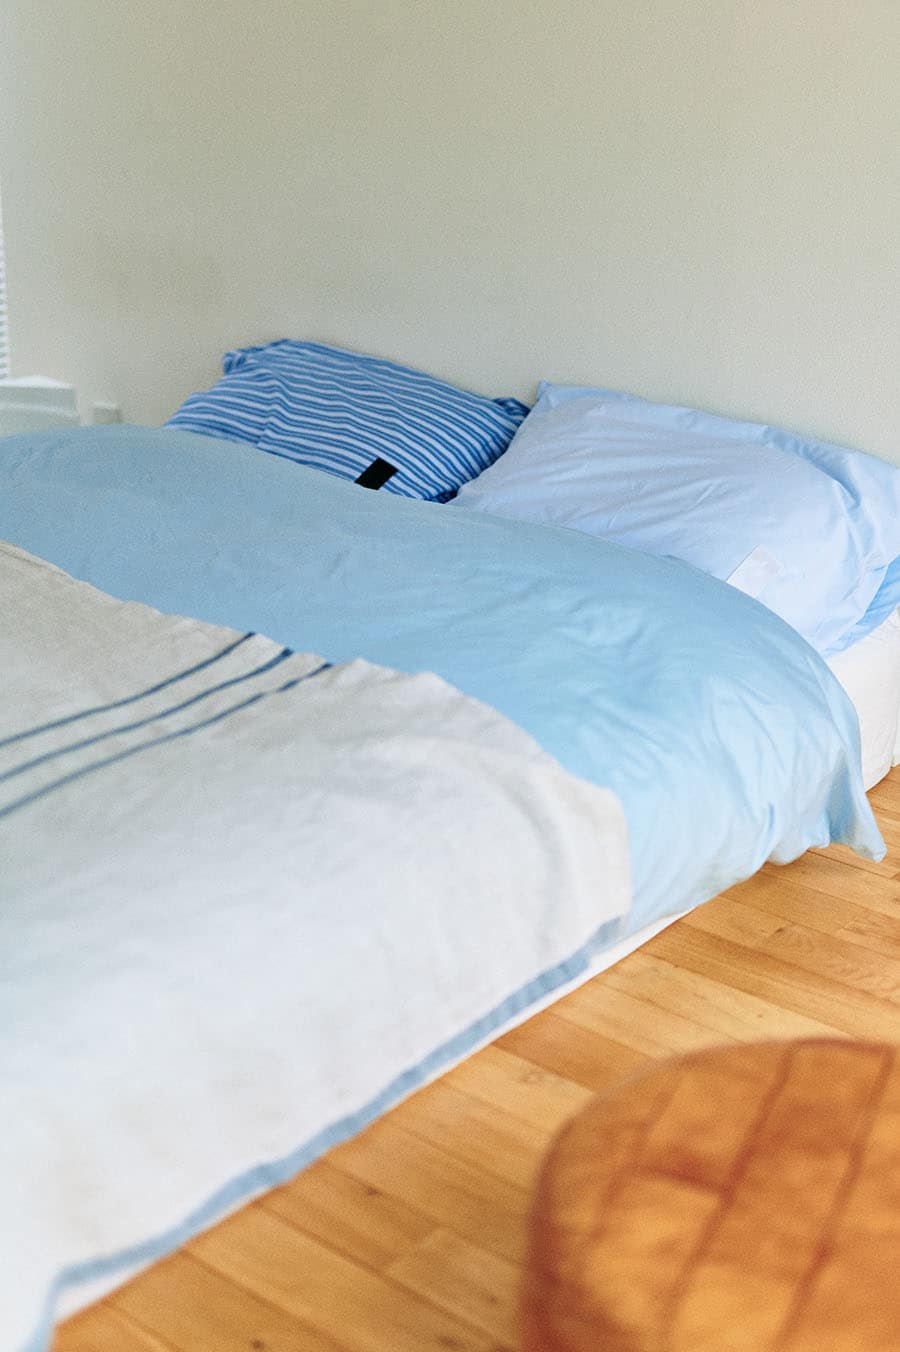 ベッドリネンは寒色系でコーディネート。ベッドスローに使っているのは、柔らかな素材感で寝室に優しさをプラスするブランケット。